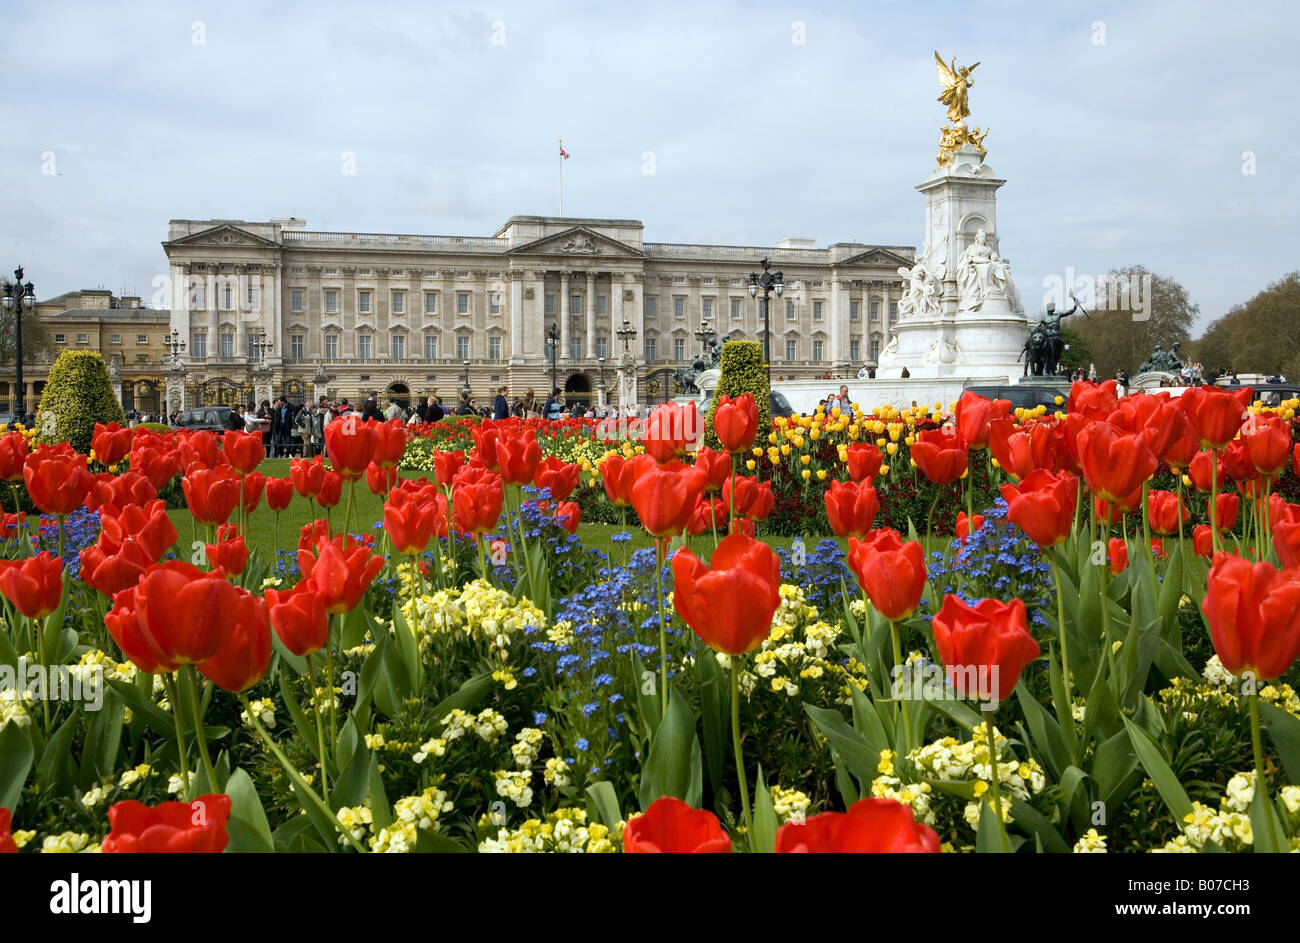 Par Paul Pic Pic Grover montre le palais de Buckingham et le Monument de la reine Victoria à Londres Banque D'Images